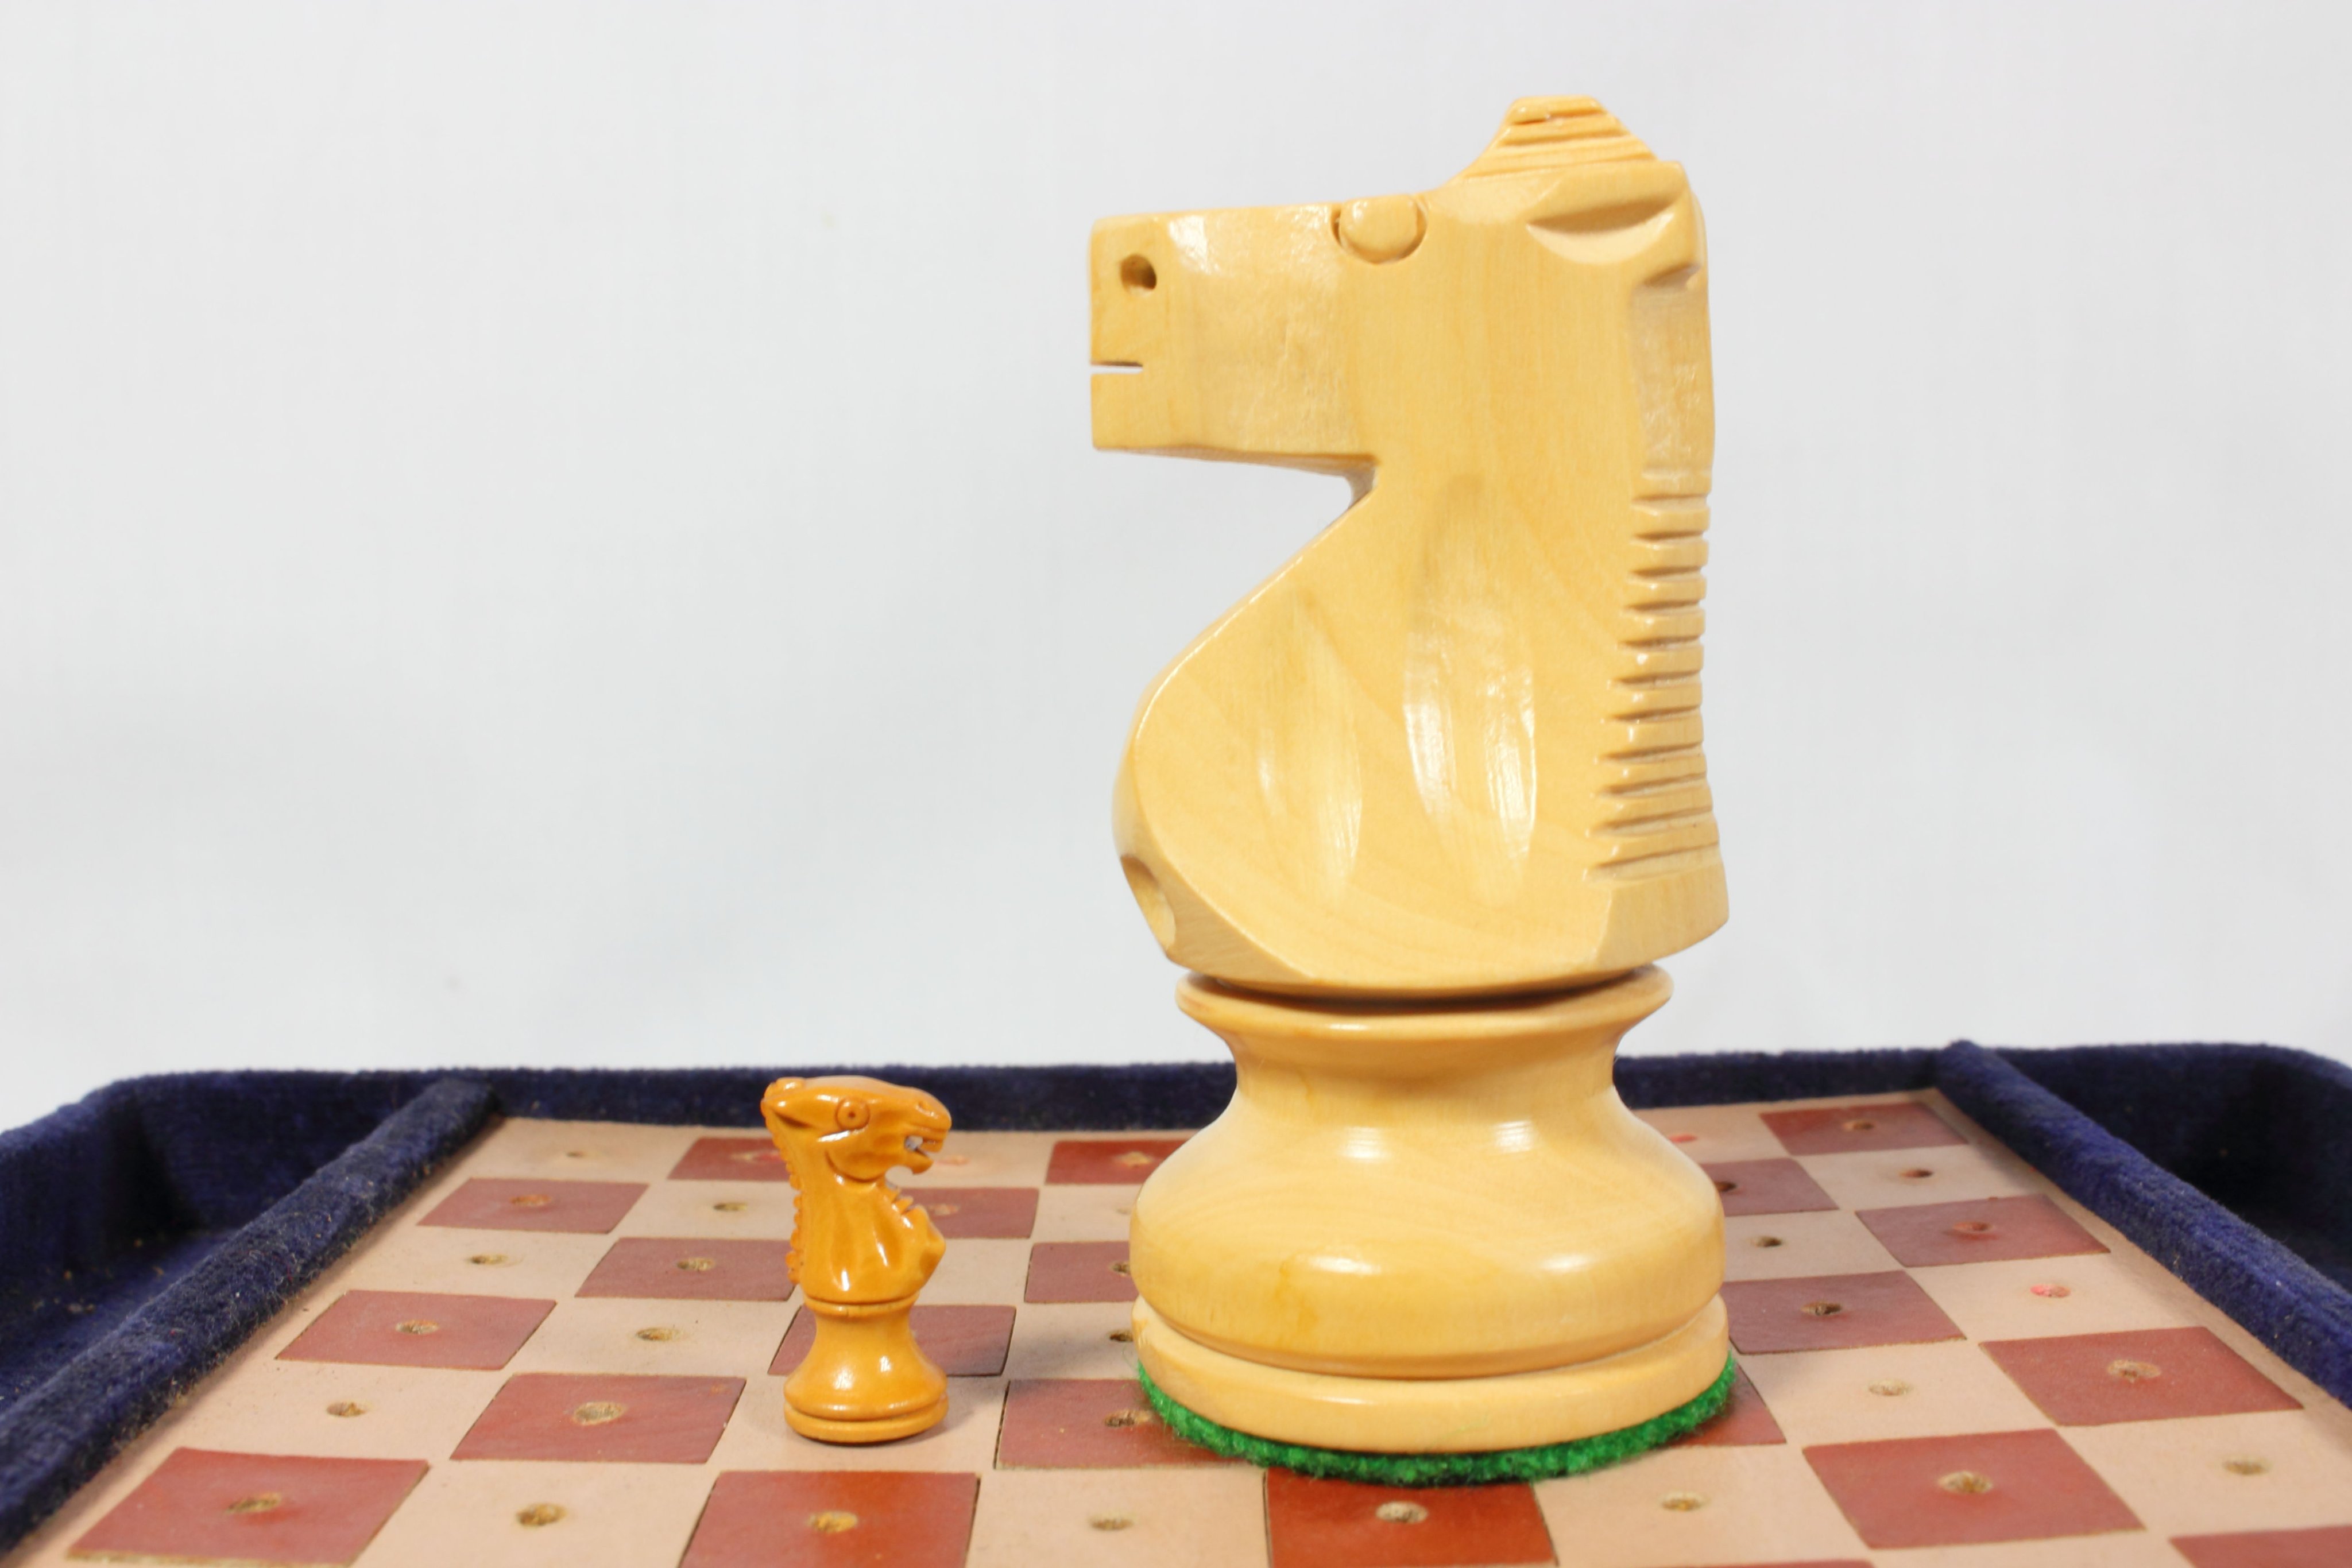 Hiroaki Matsui ナイト生産に向け試作中 自分のコレクションの中でも面白いのが極小のポータブルチェス 普通のナイトと比較すると嘘のように小さいのにとても精密に出来ている しかも木製 一体どうやって作っているんだろう チェス Chess